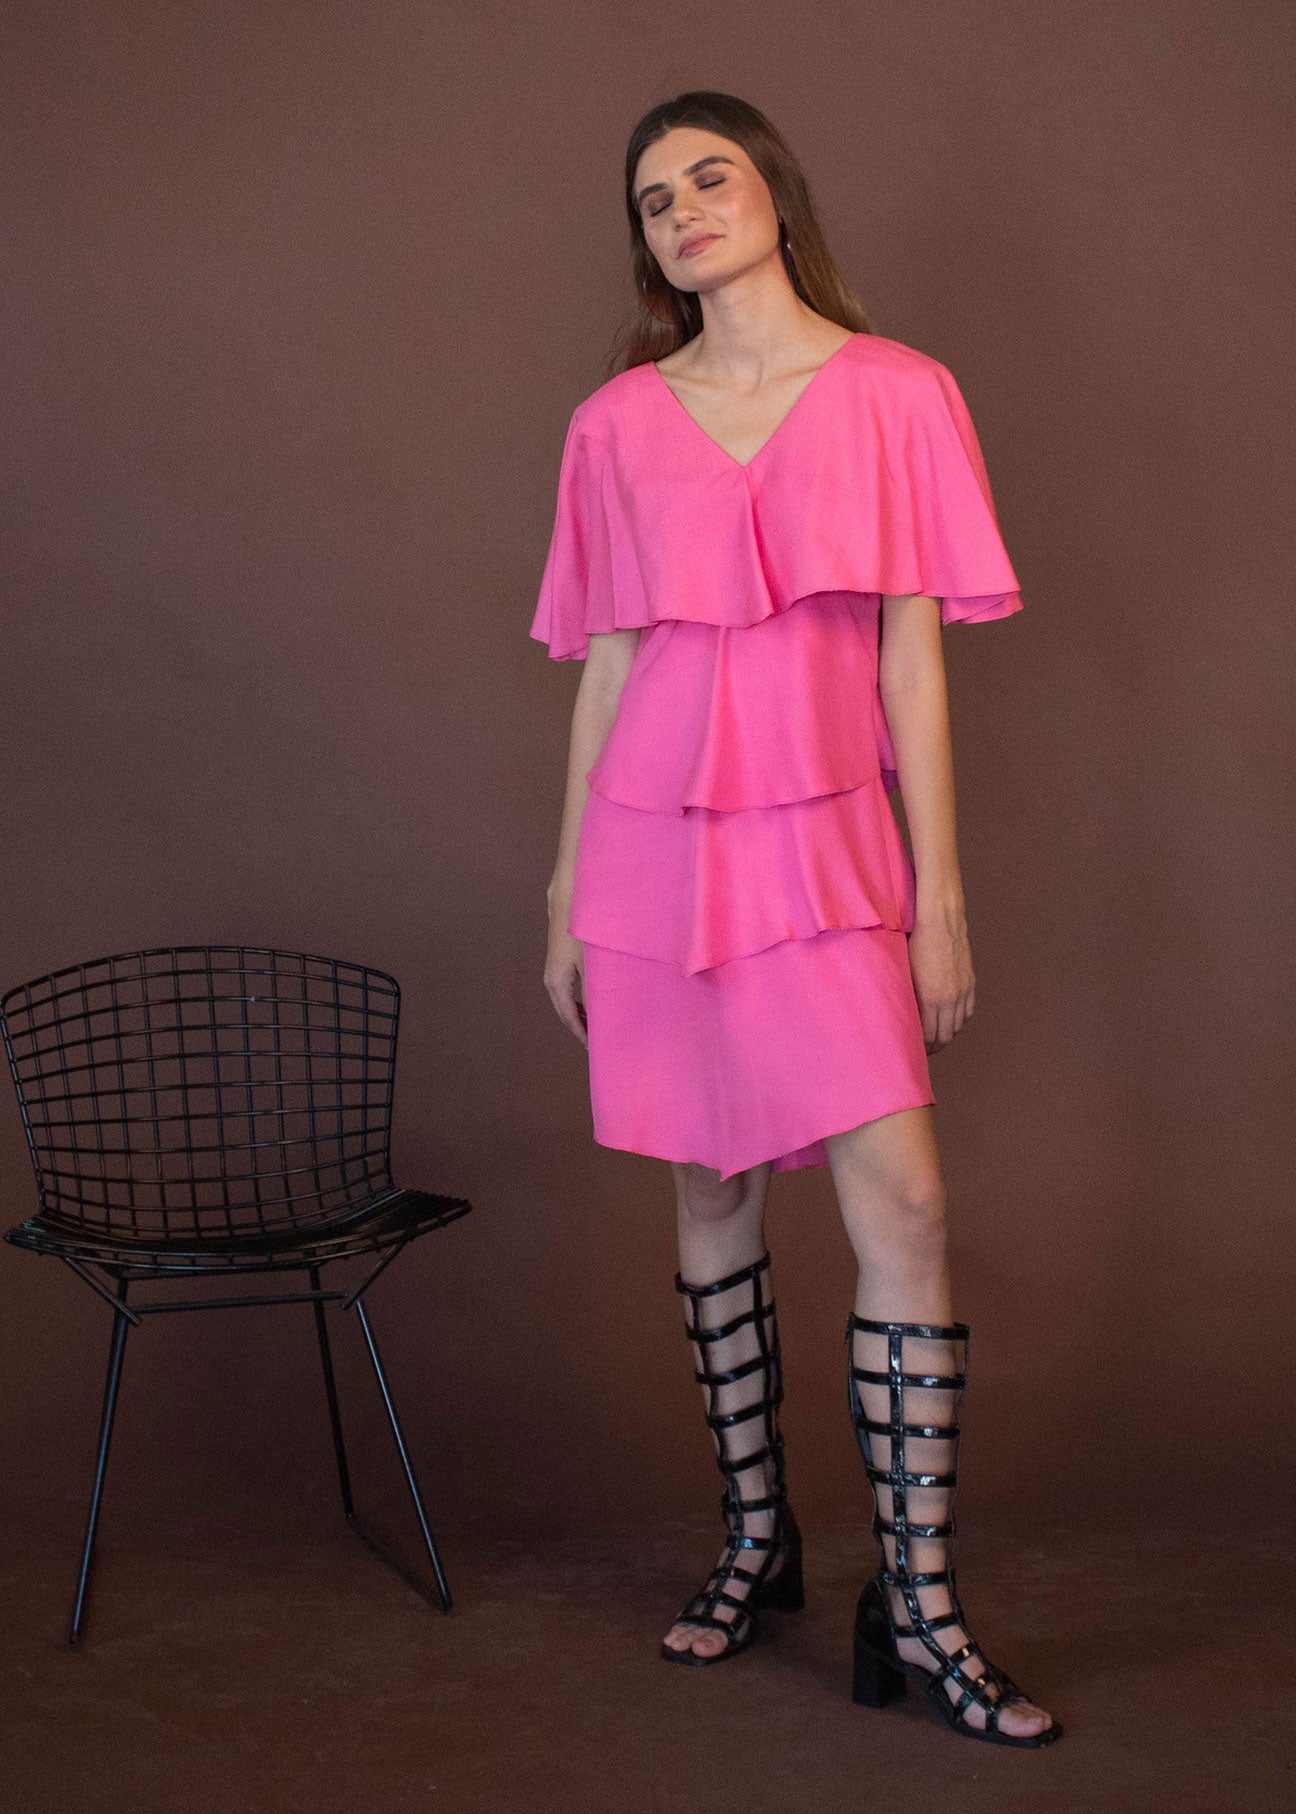 80s Ruffle Pink Dress